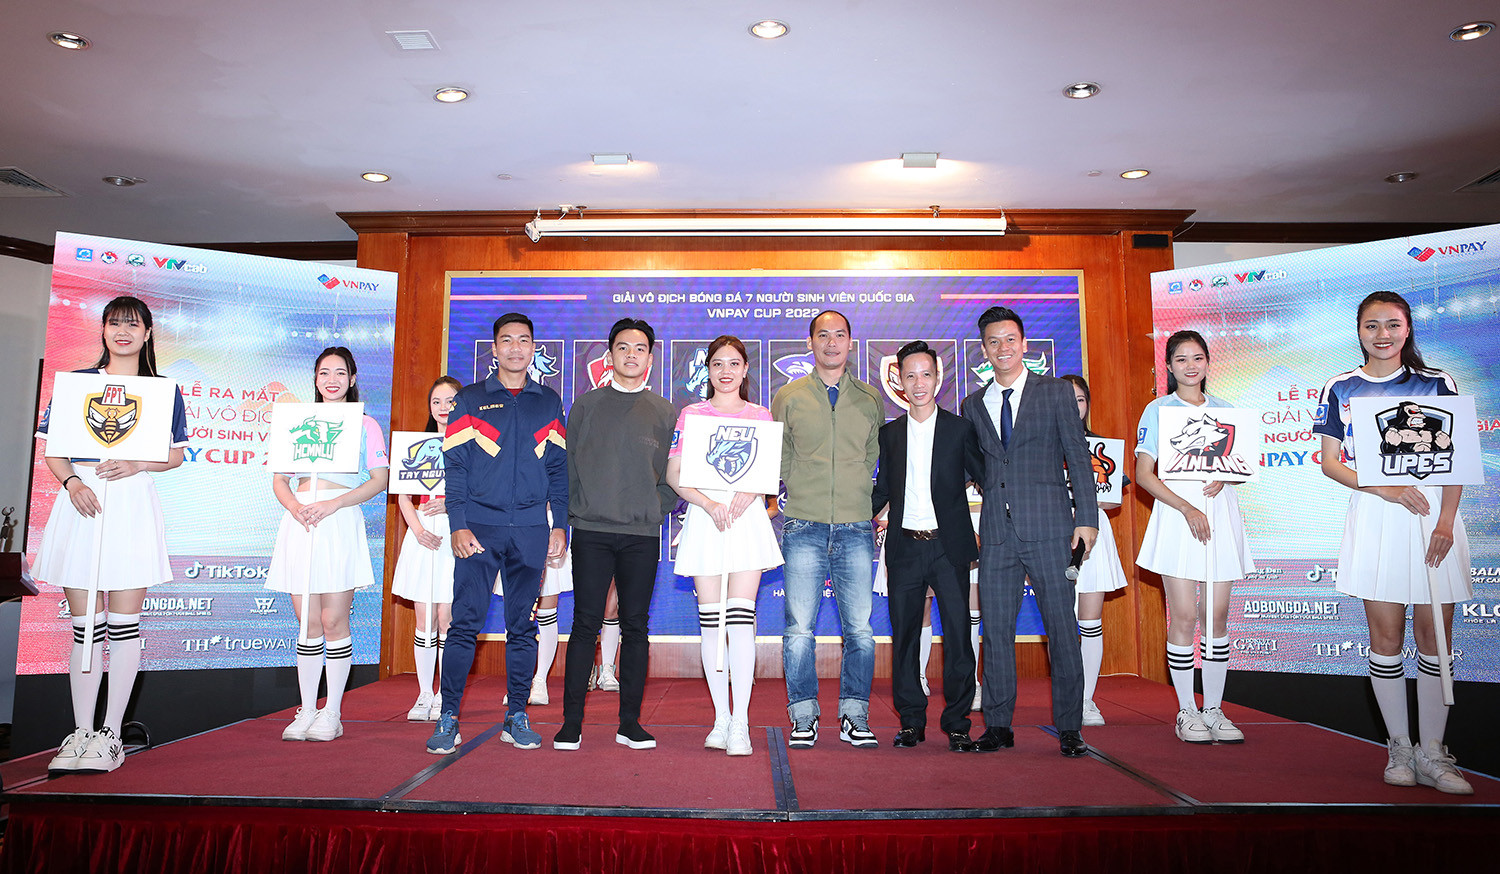 Giải vô địch bóng đá 7 người sinh viên diễn ra ở Nha Trang